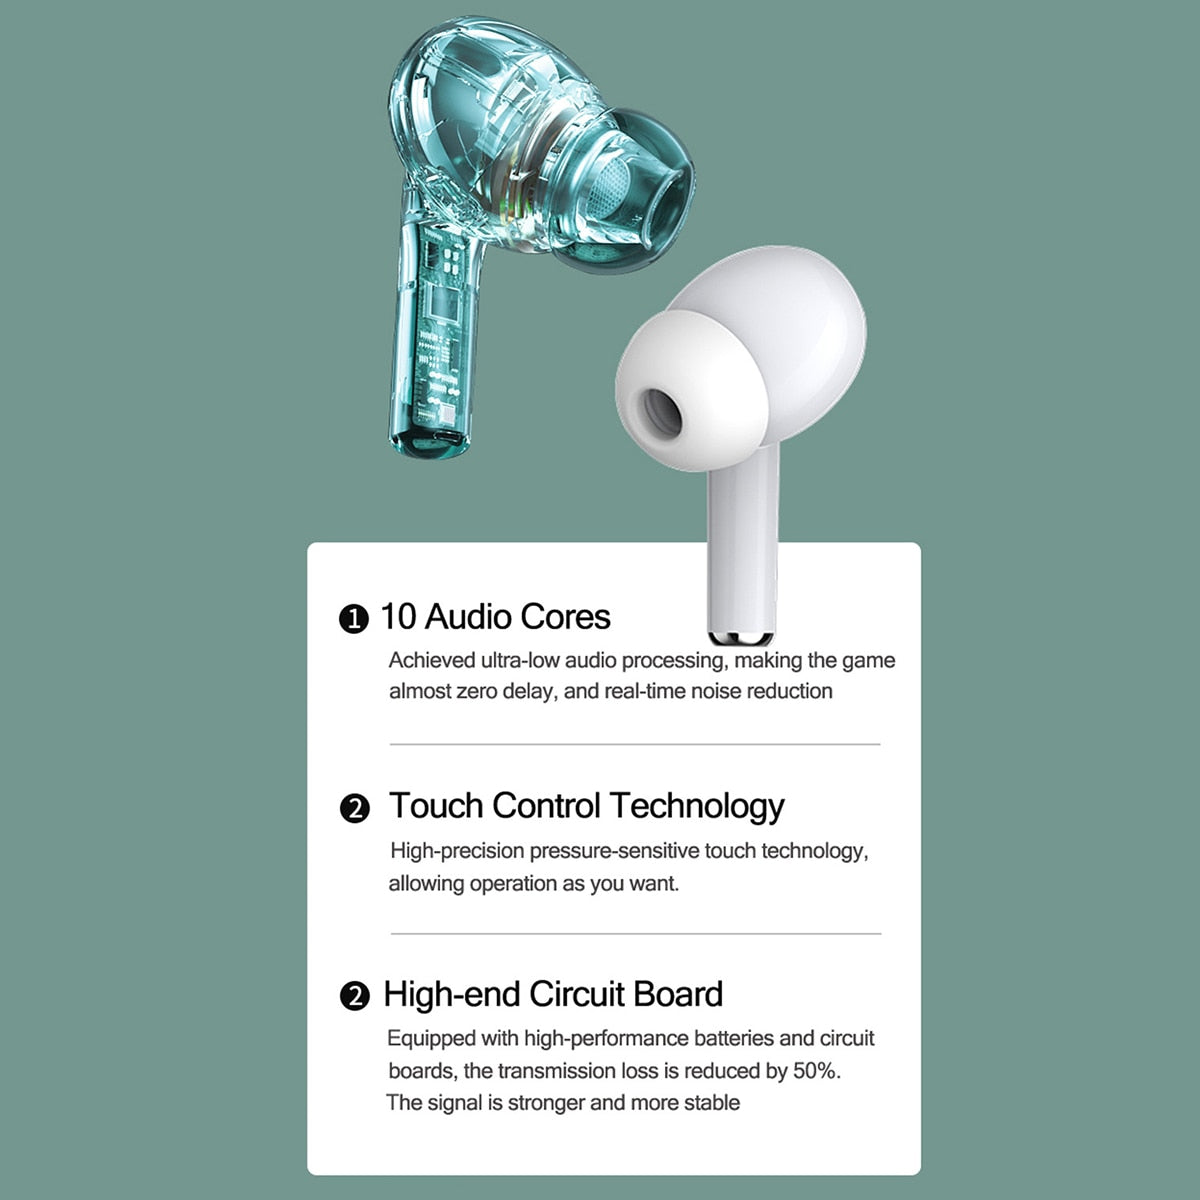 سماعات Letv Ears Pro TWS بلوتوث 5.0، صندوق شحن، سماعة رأس لاسلكية، تحكم باللمس مع ميكروفون